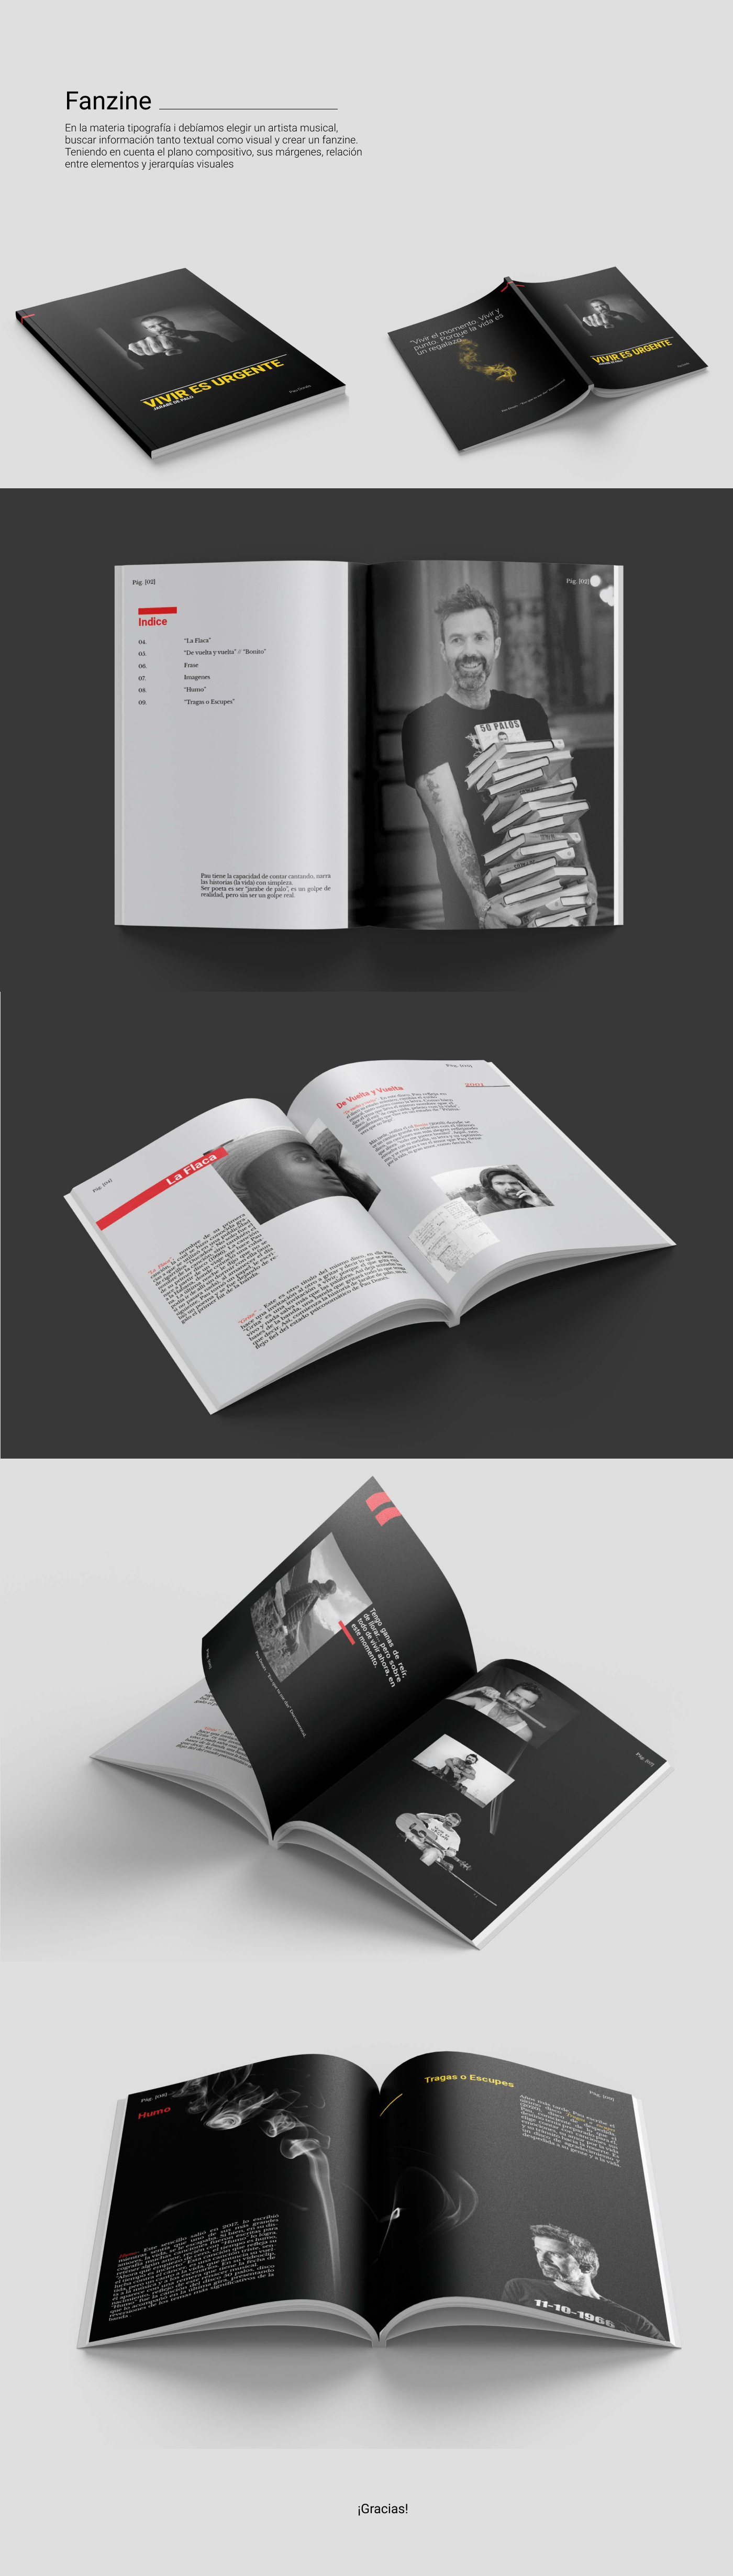 book design diseño Diseño editorial diseño gráfico editorial fanzine tipografia typography   Zine 